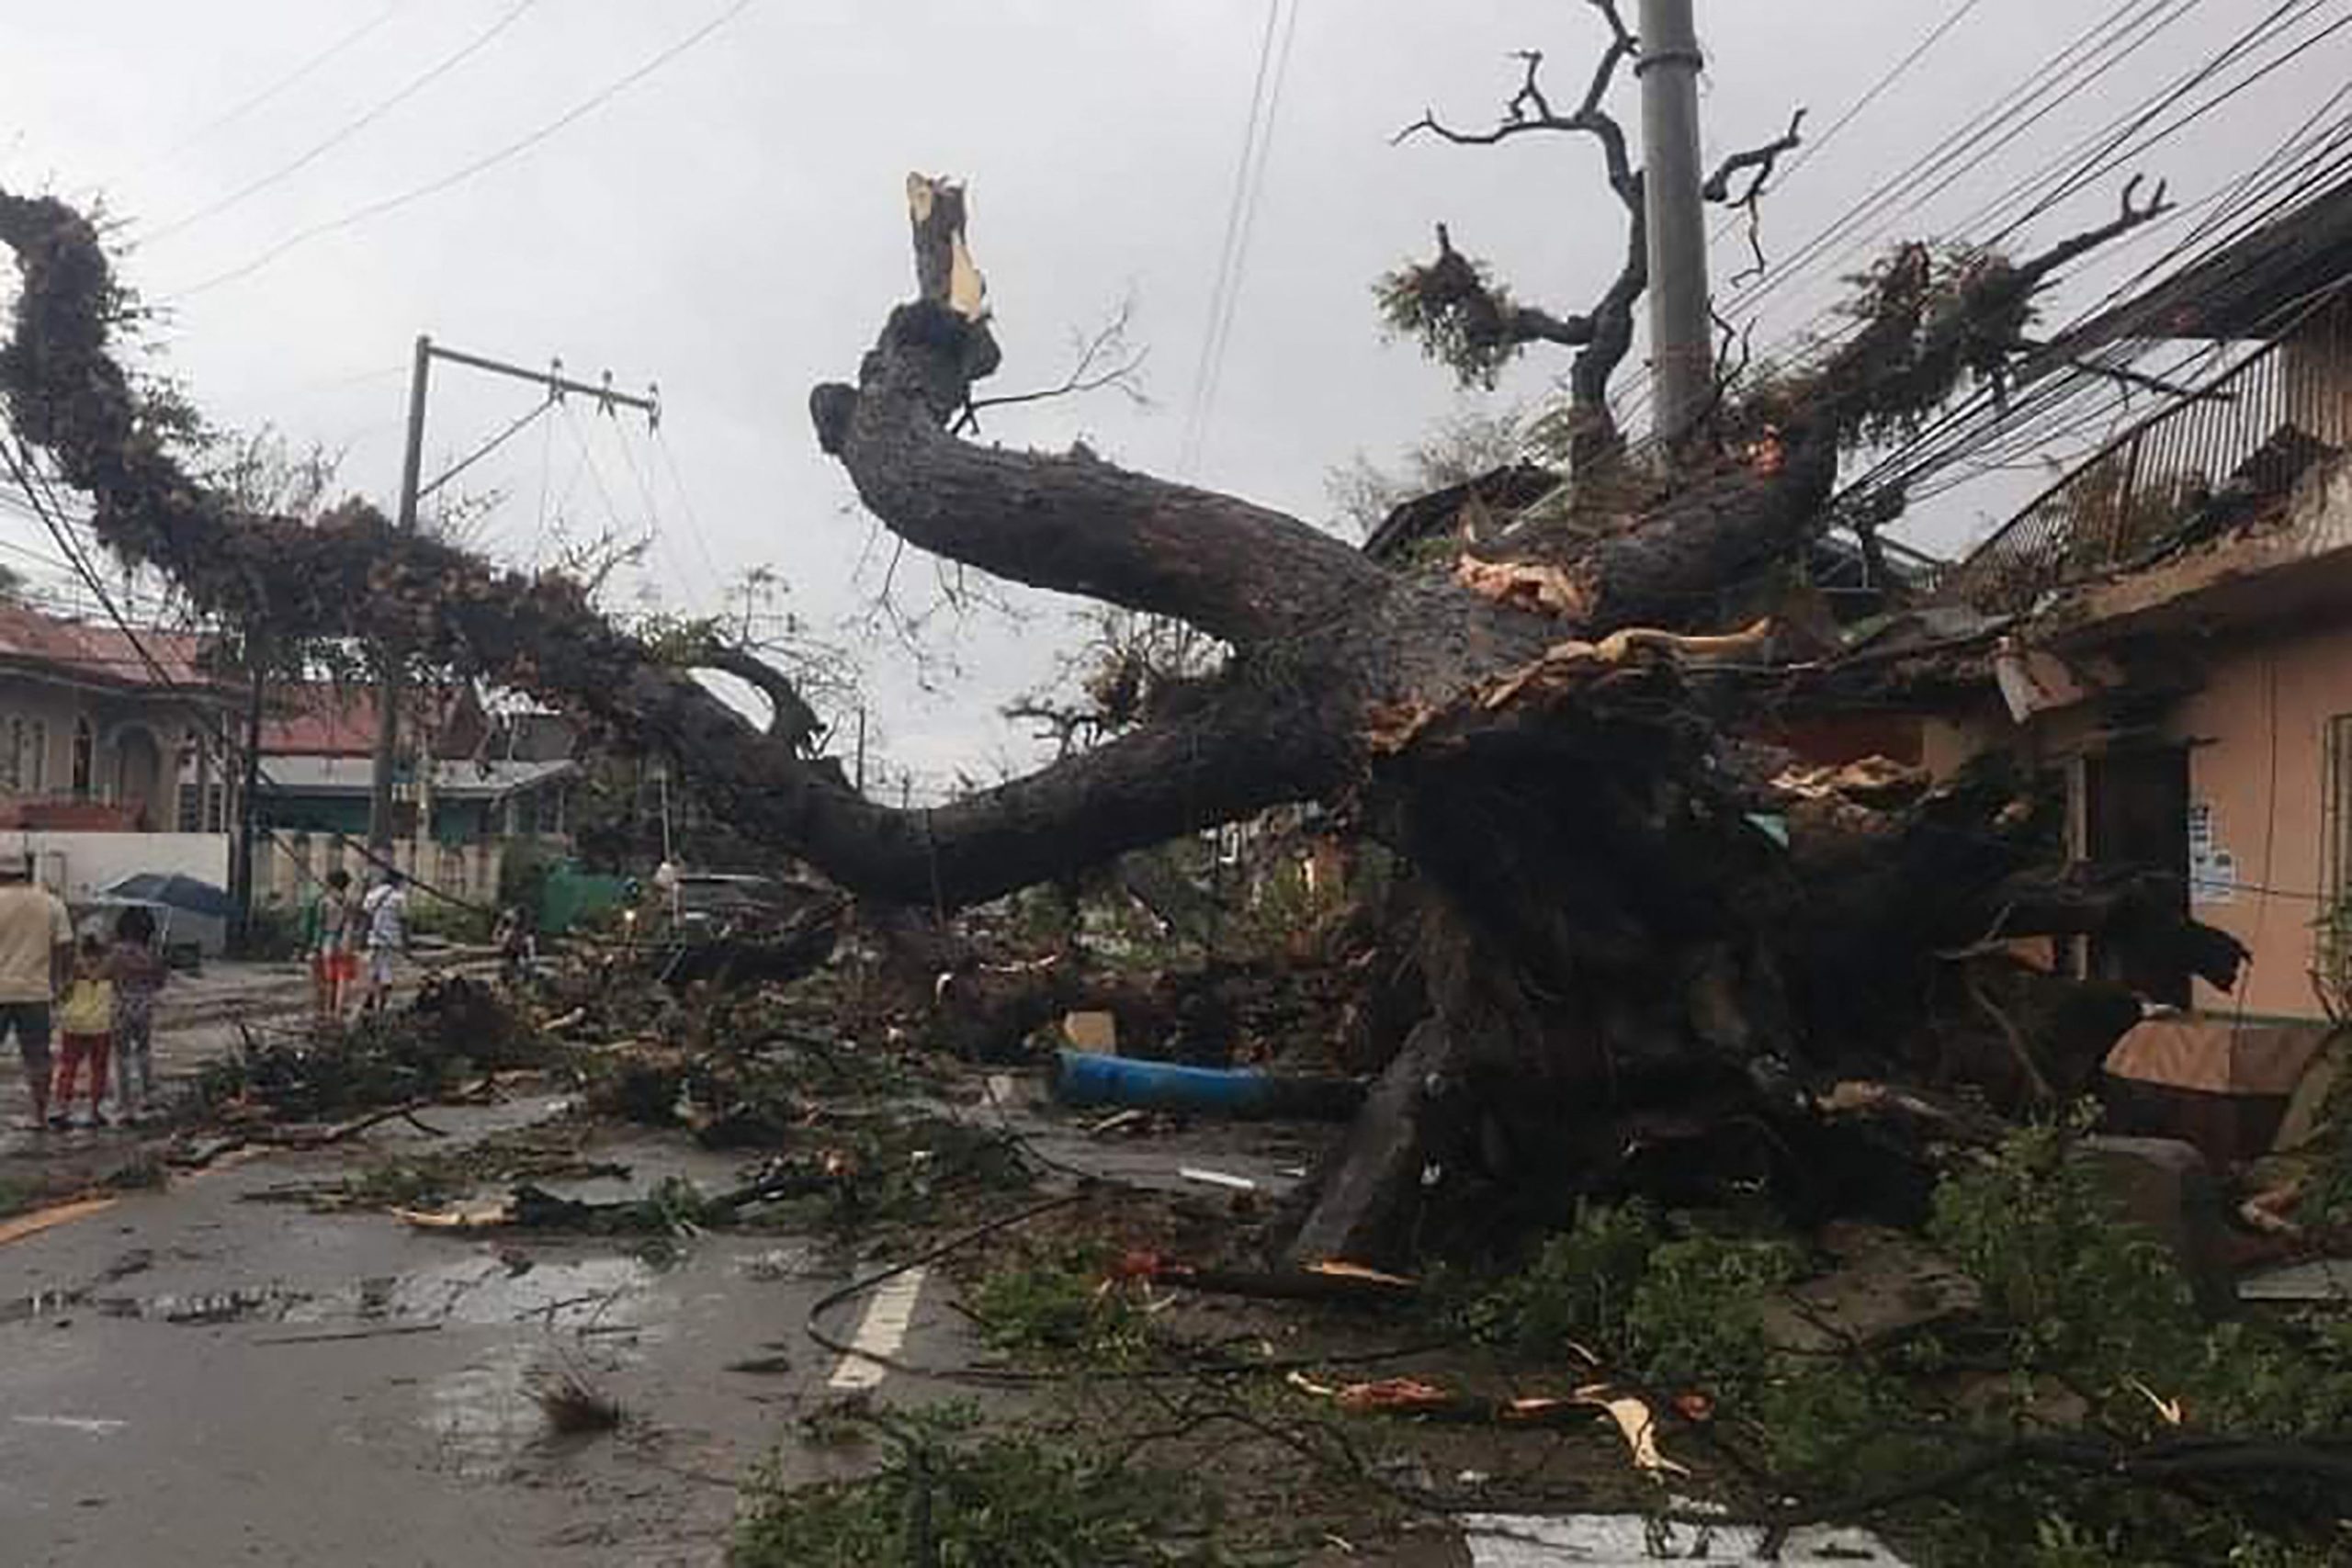 菲律宾／强台风造成至少一人死亡 超过30万人离家避难